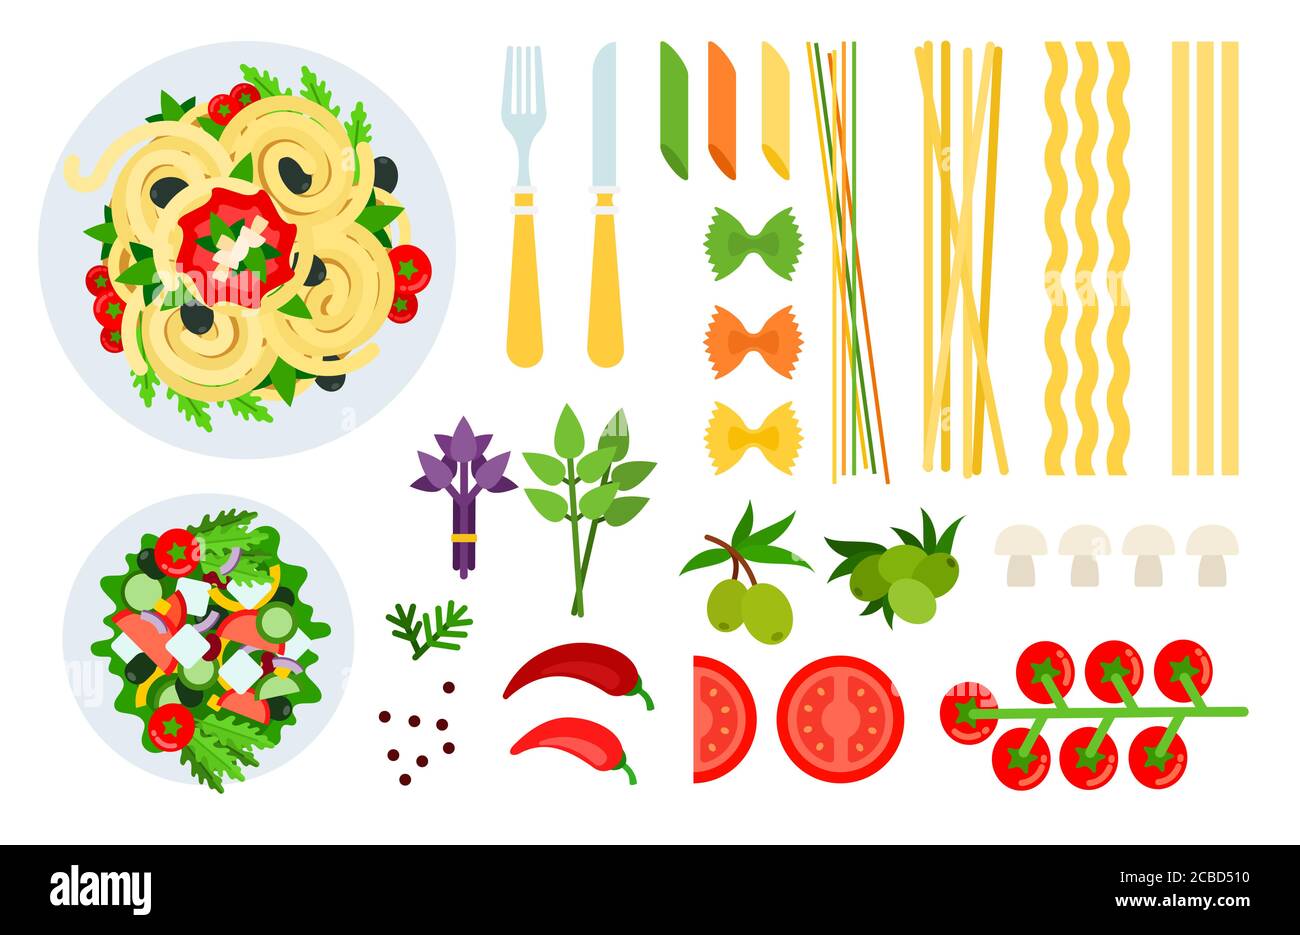 Spaghetti italiani, insalata e ingredienti illustrazione vettoriale in un disegno piatto. Illustrazione Vettoriale